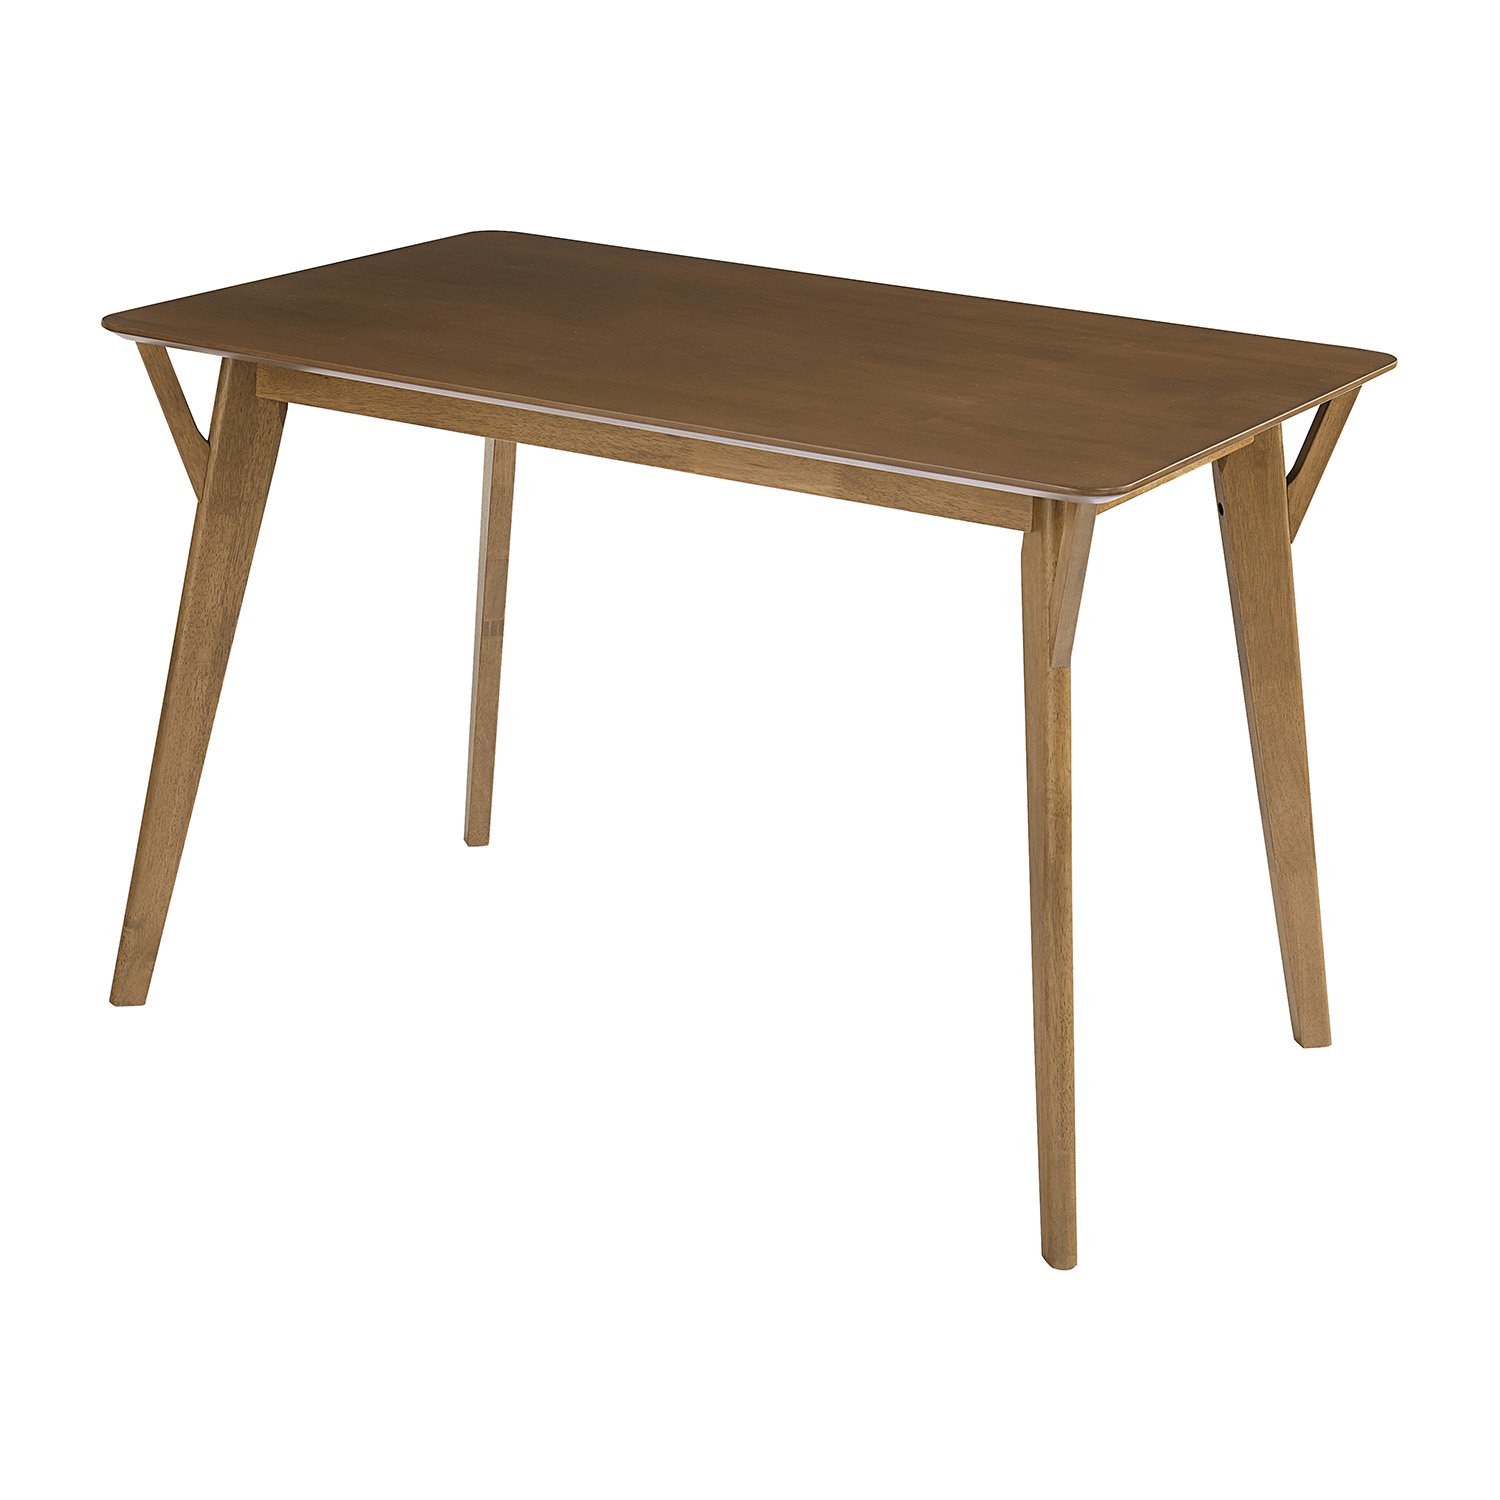 D875-10 table.jpg